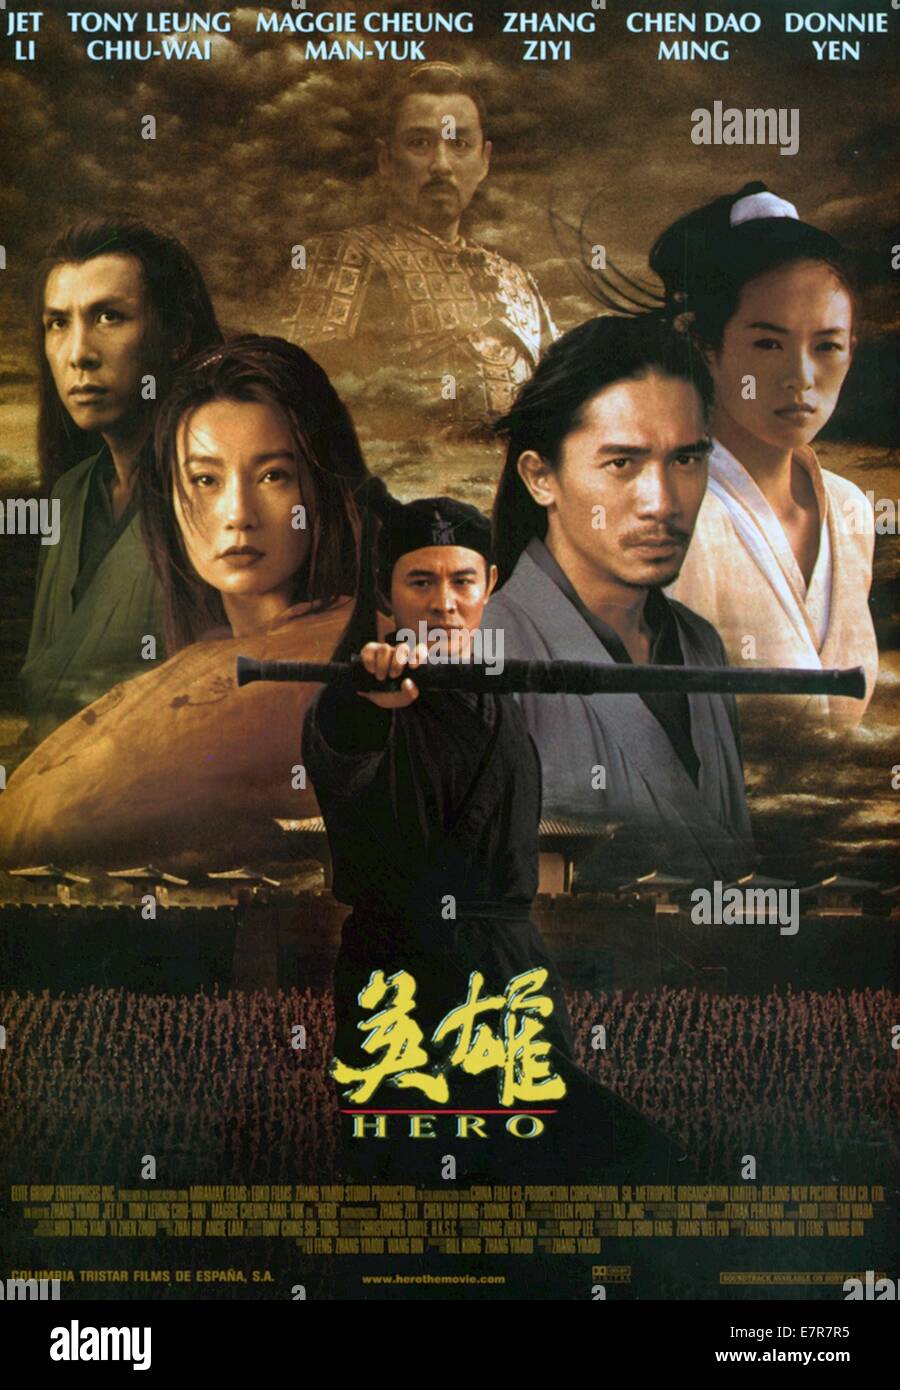 Hero  Ying xiong  Year : 2002 China Director : Yimou Zhang Maggie Cheung, Jet Li, Tony Chiu Wai Leung,  Ziyi Zhang  Movie poster Stock Photo